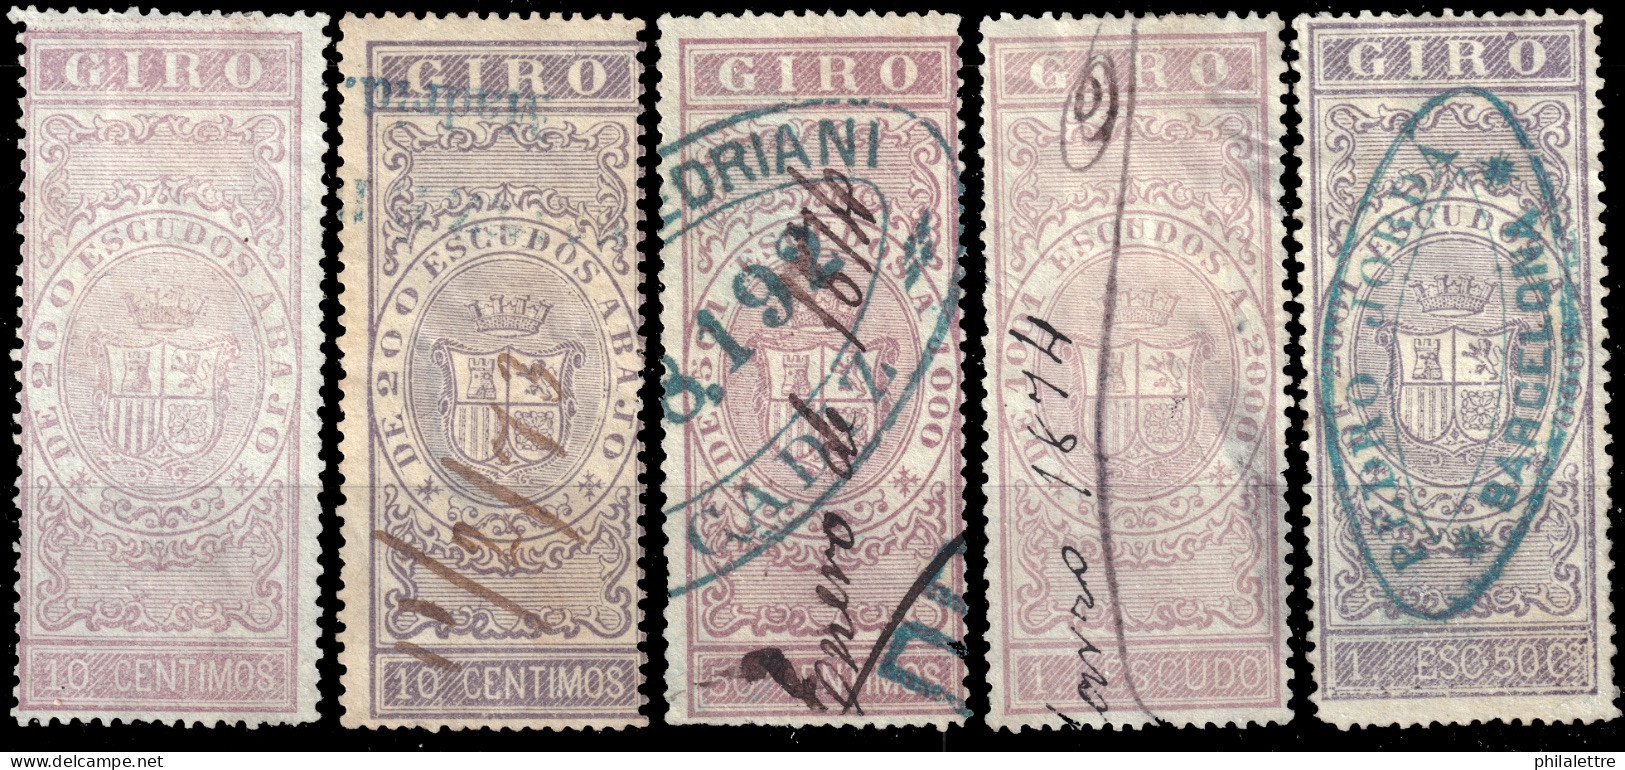 ESPAGNE / ESPANA / SPAIN - 1870 - SELLOS PARA GIRO 10c Sin Goma, 10c, 50c, 1Esc. & 1,50Esc.uso Fiscal Ed.43, 43a, 44/46 - Fiscaux